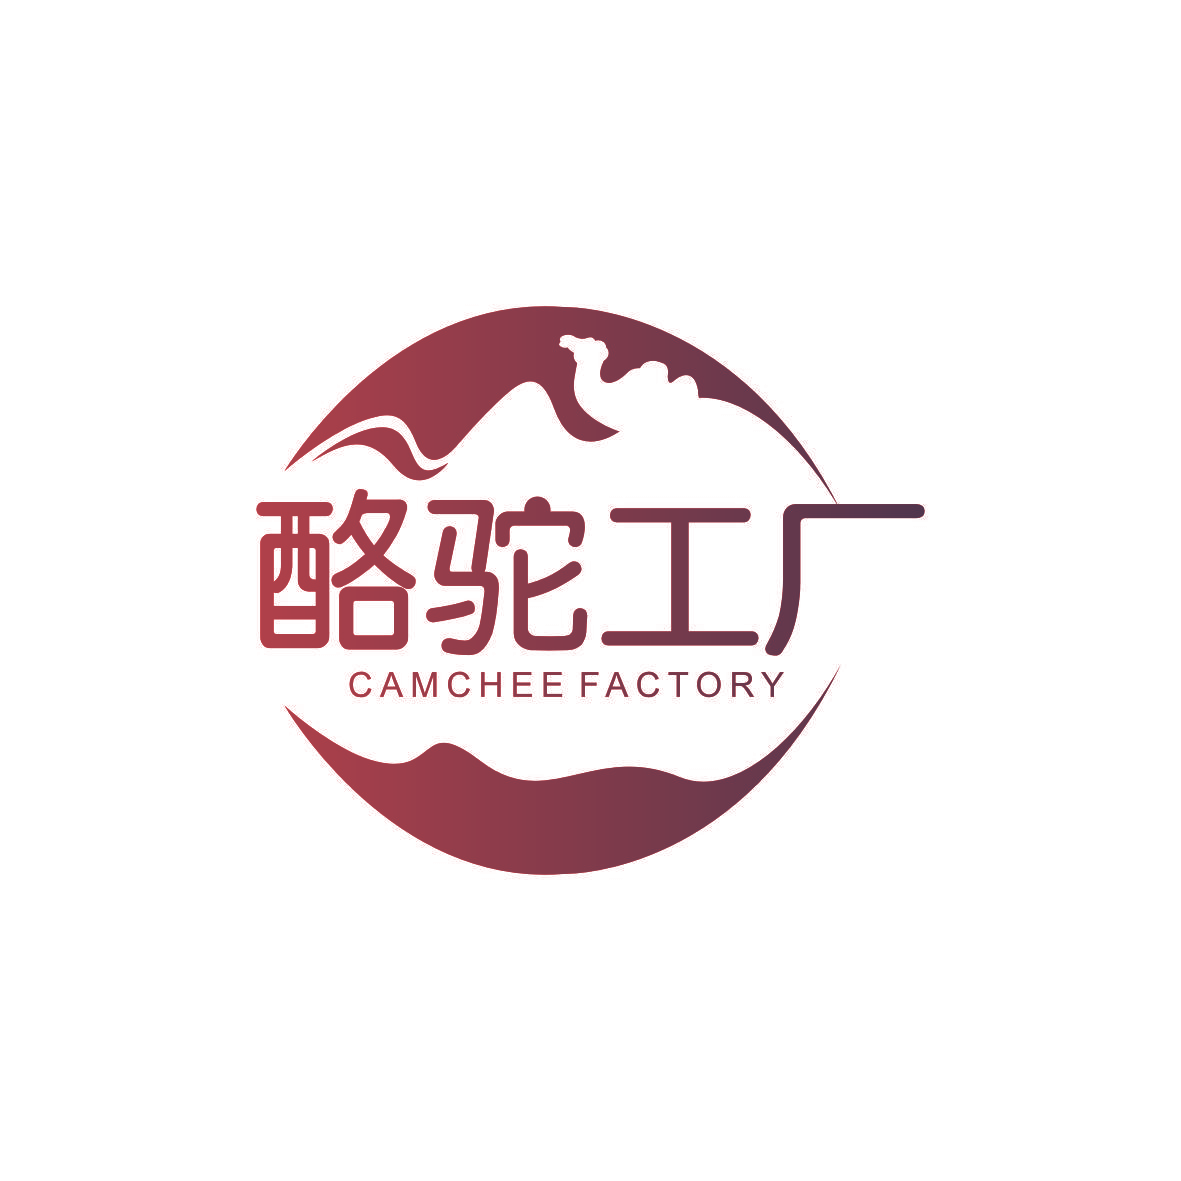 酪驼工厂  CAMCHEE FACTORY